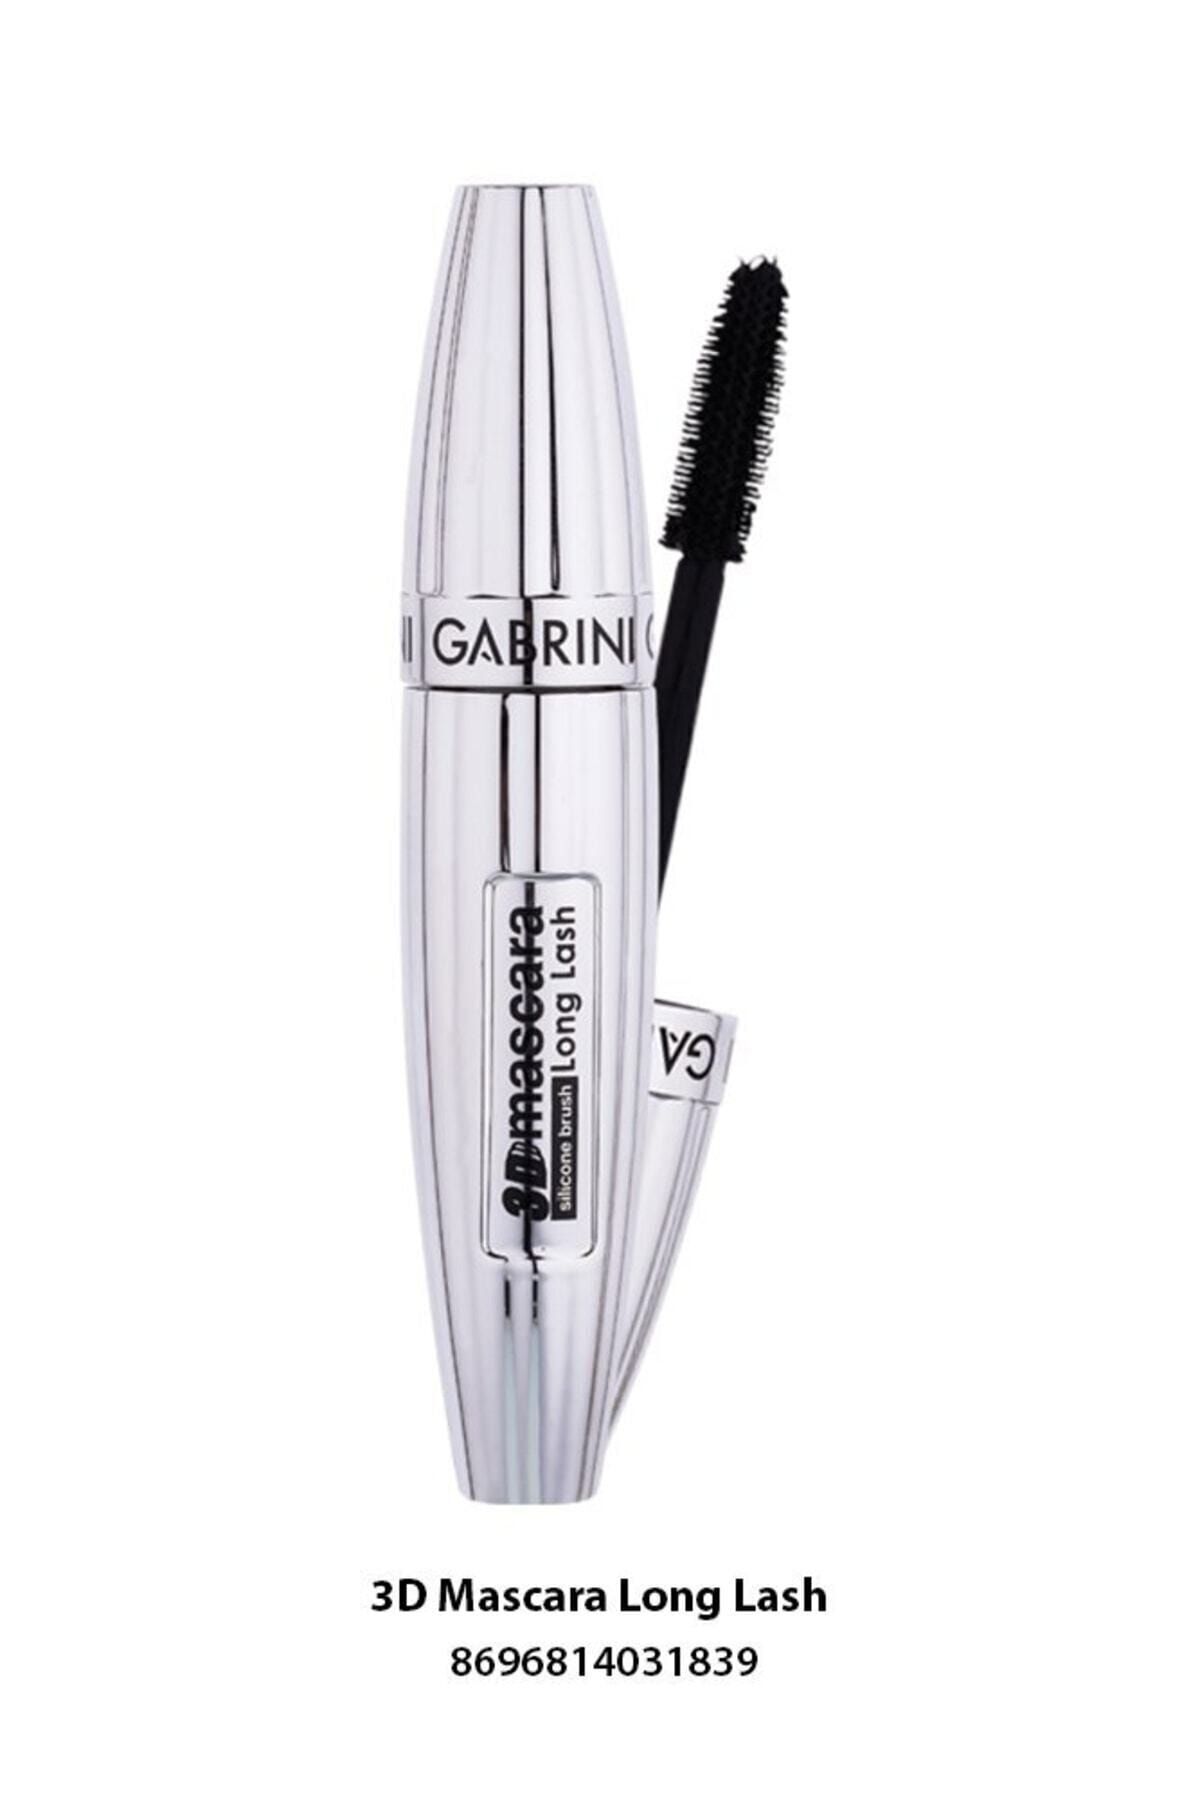 Gabrini 3d Silicon Brush Long Lash Mascara